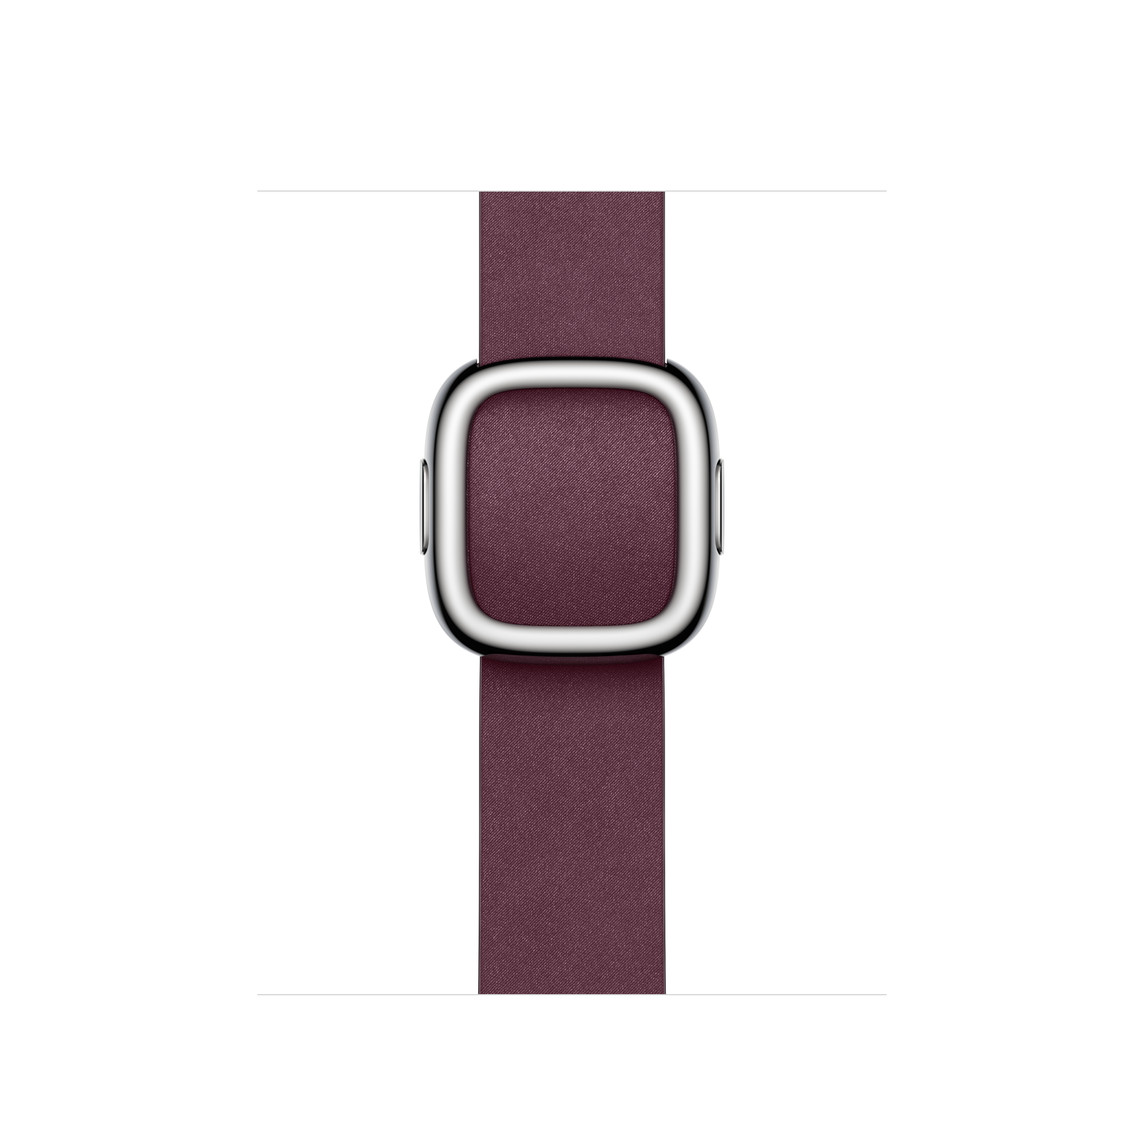 Modernes Armband in Mulberry (Weinrot) mit magnetischer Schließe aus Edelstahl